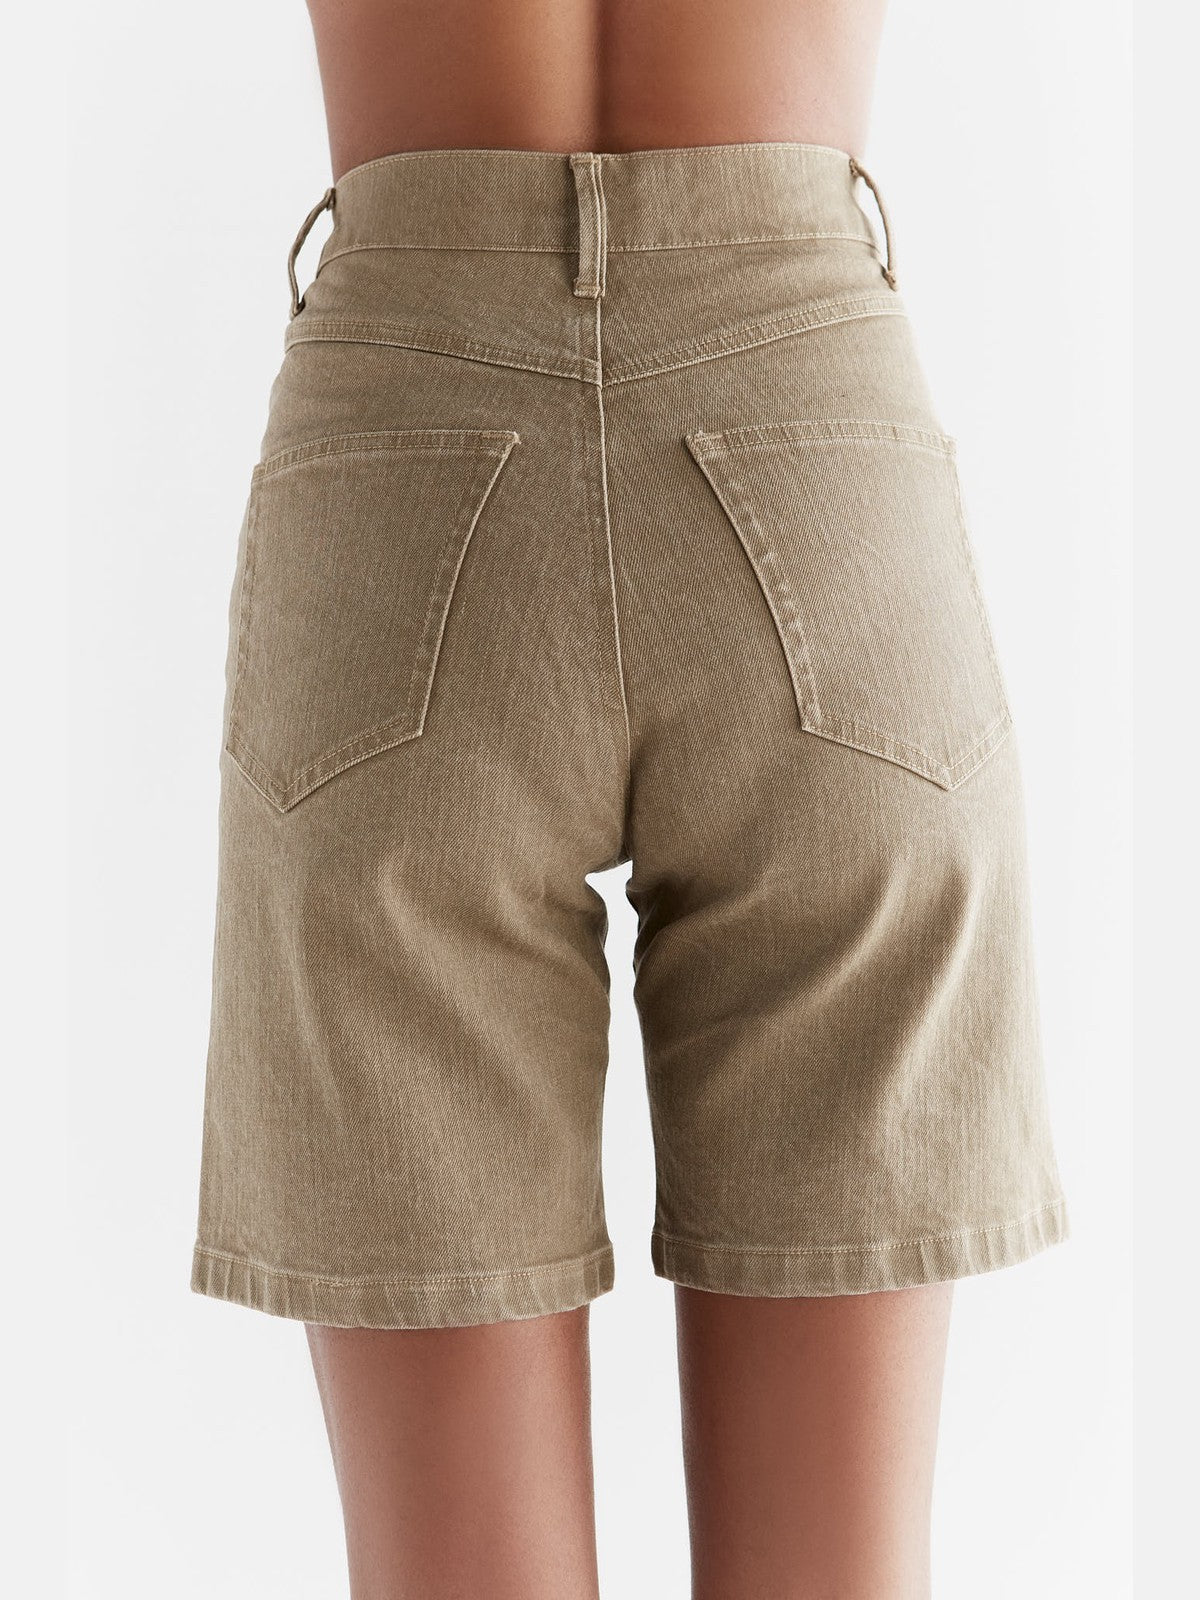 WA3018-403 | Damen Denim Shorts in Ton Waschung - Caribe